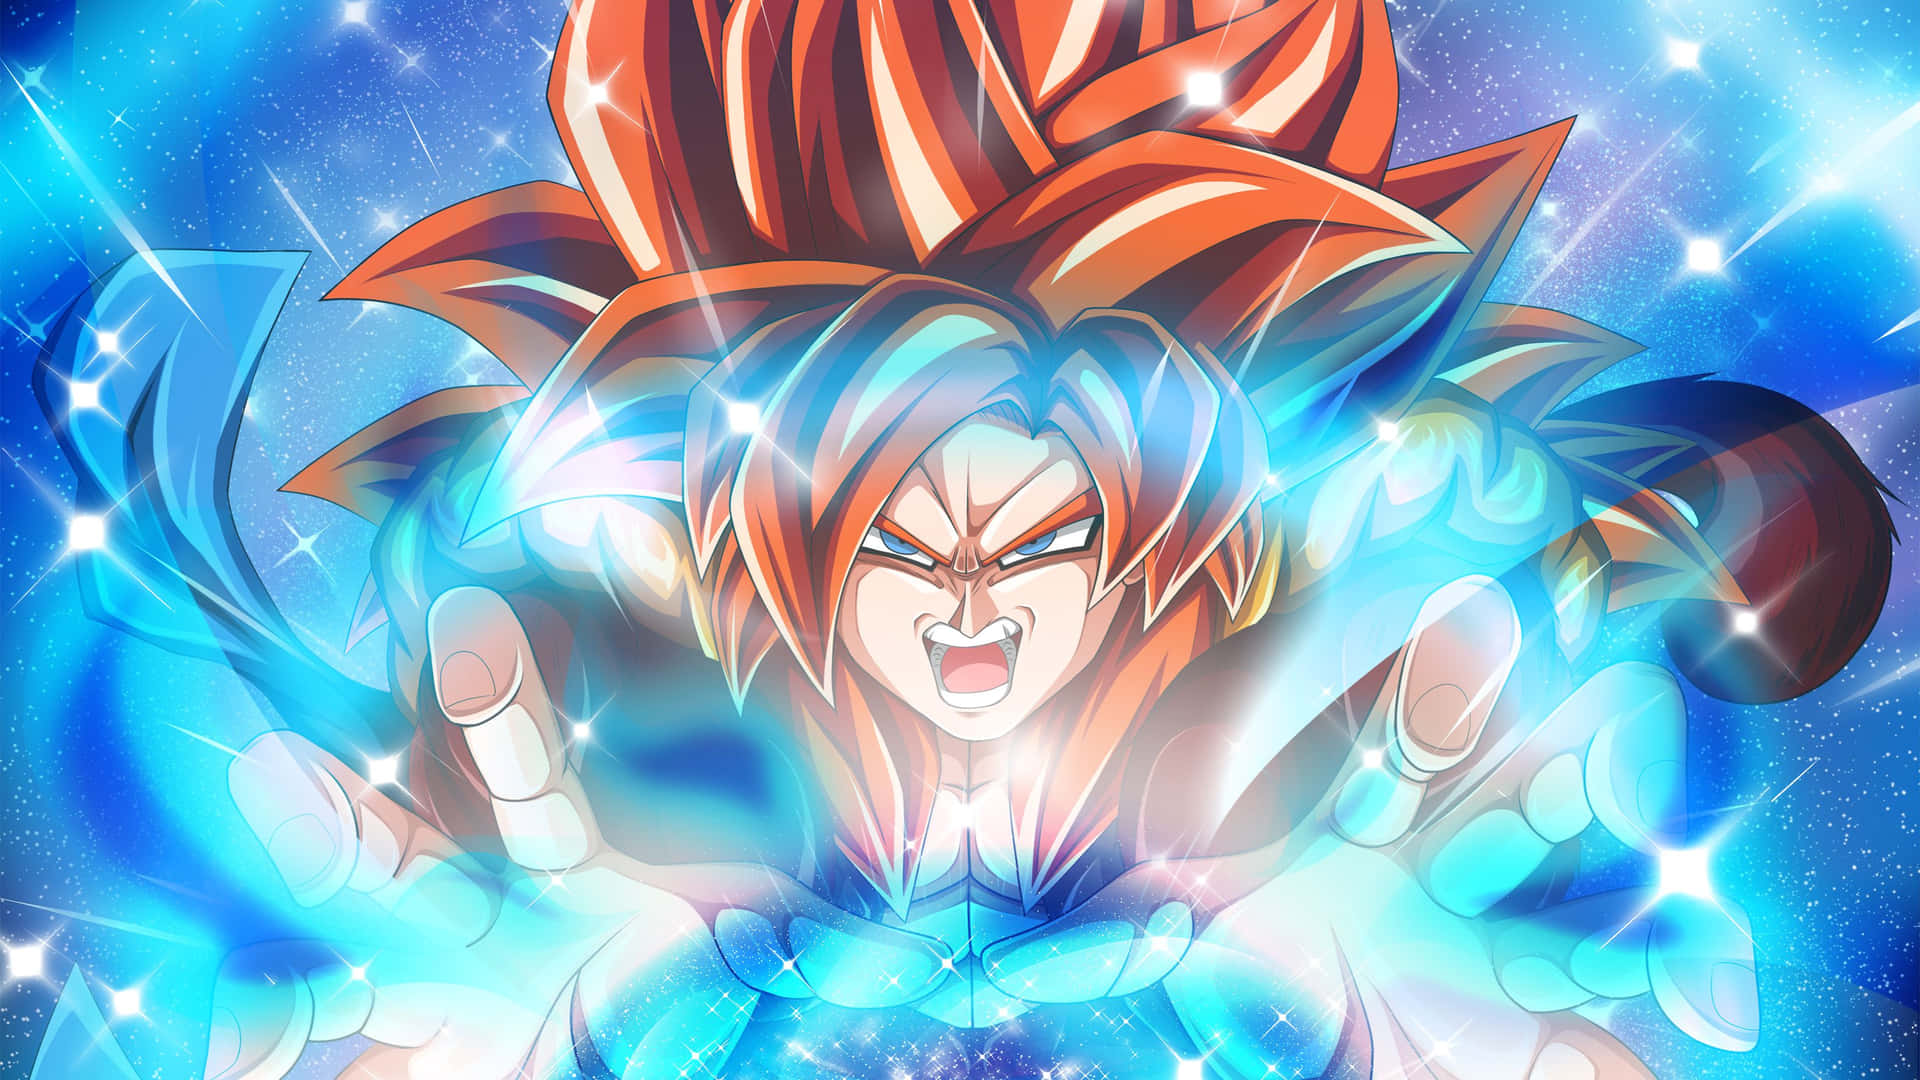 Imagende Goku De Dragon Ball Super Con Cabello Naranja.